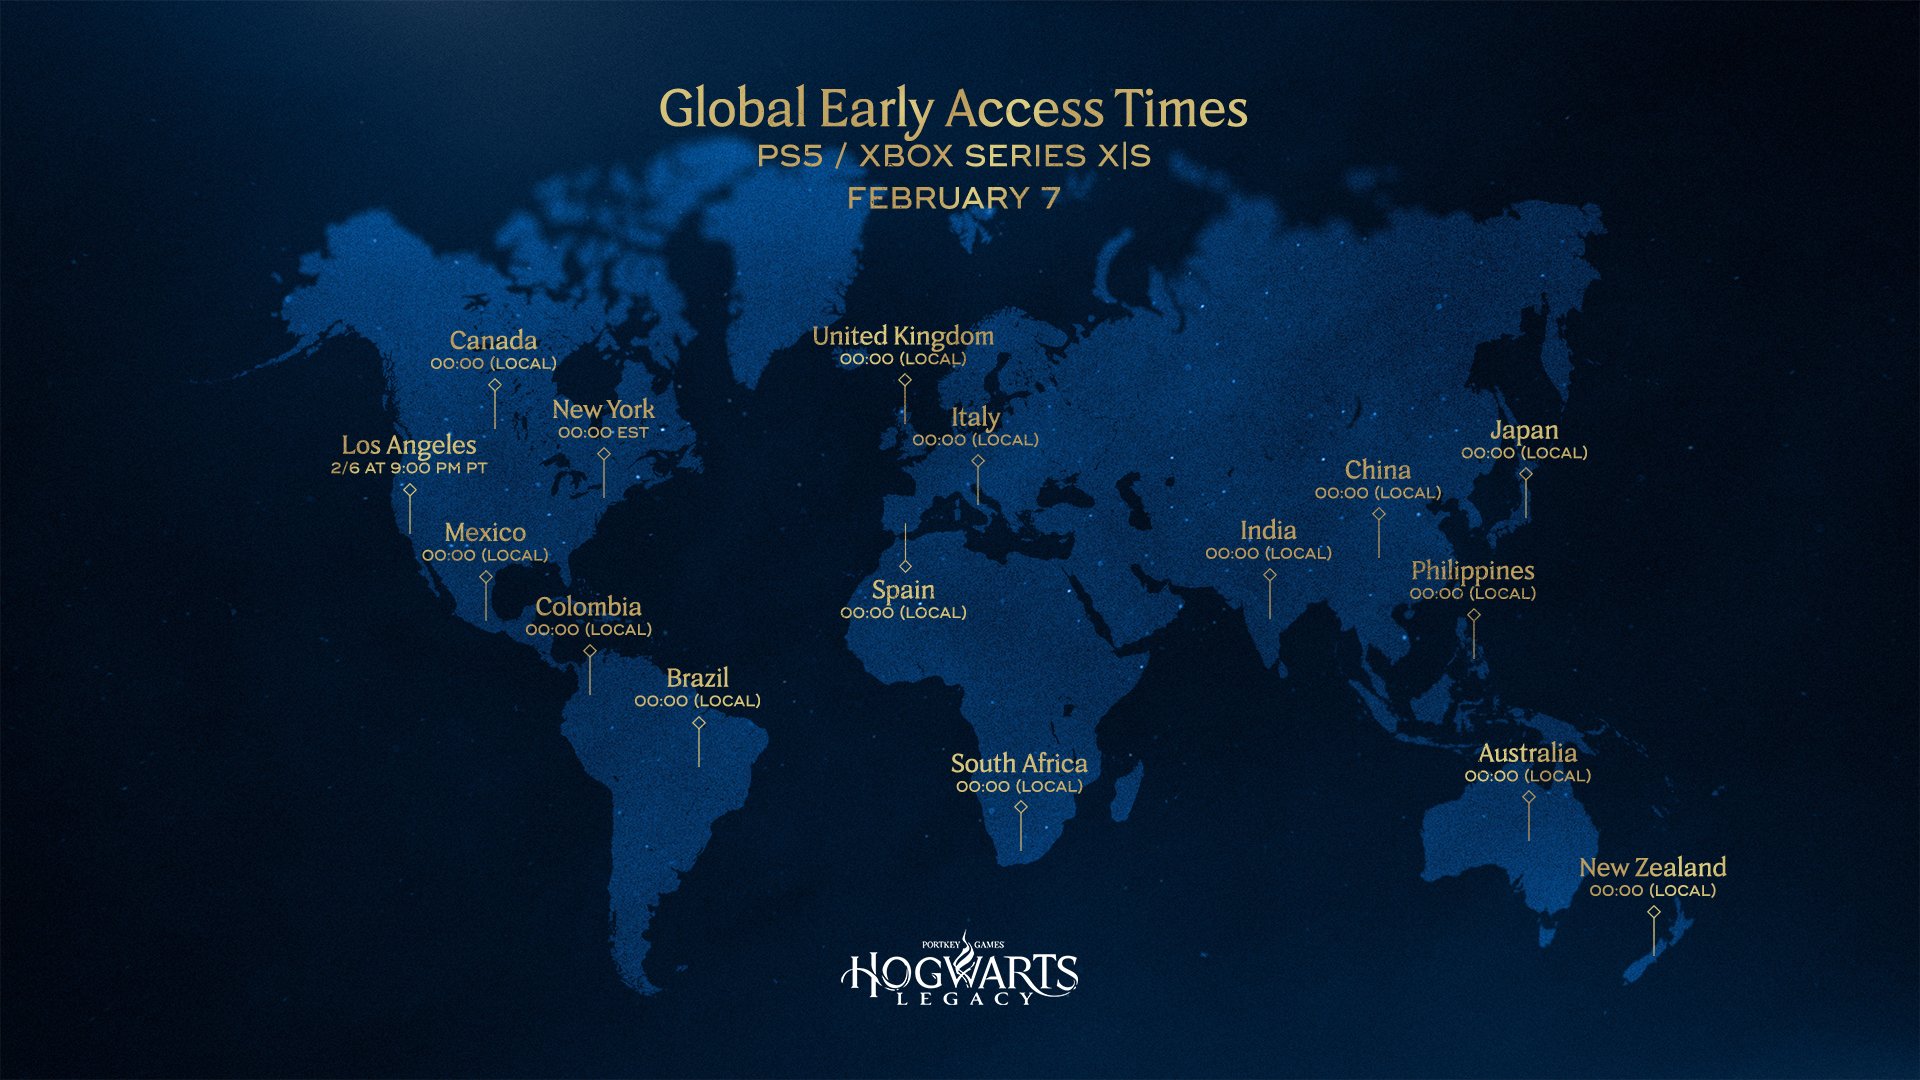 《霍格沃茨之遗》全球各地解锁时间公布 最早可于2月7日游玩